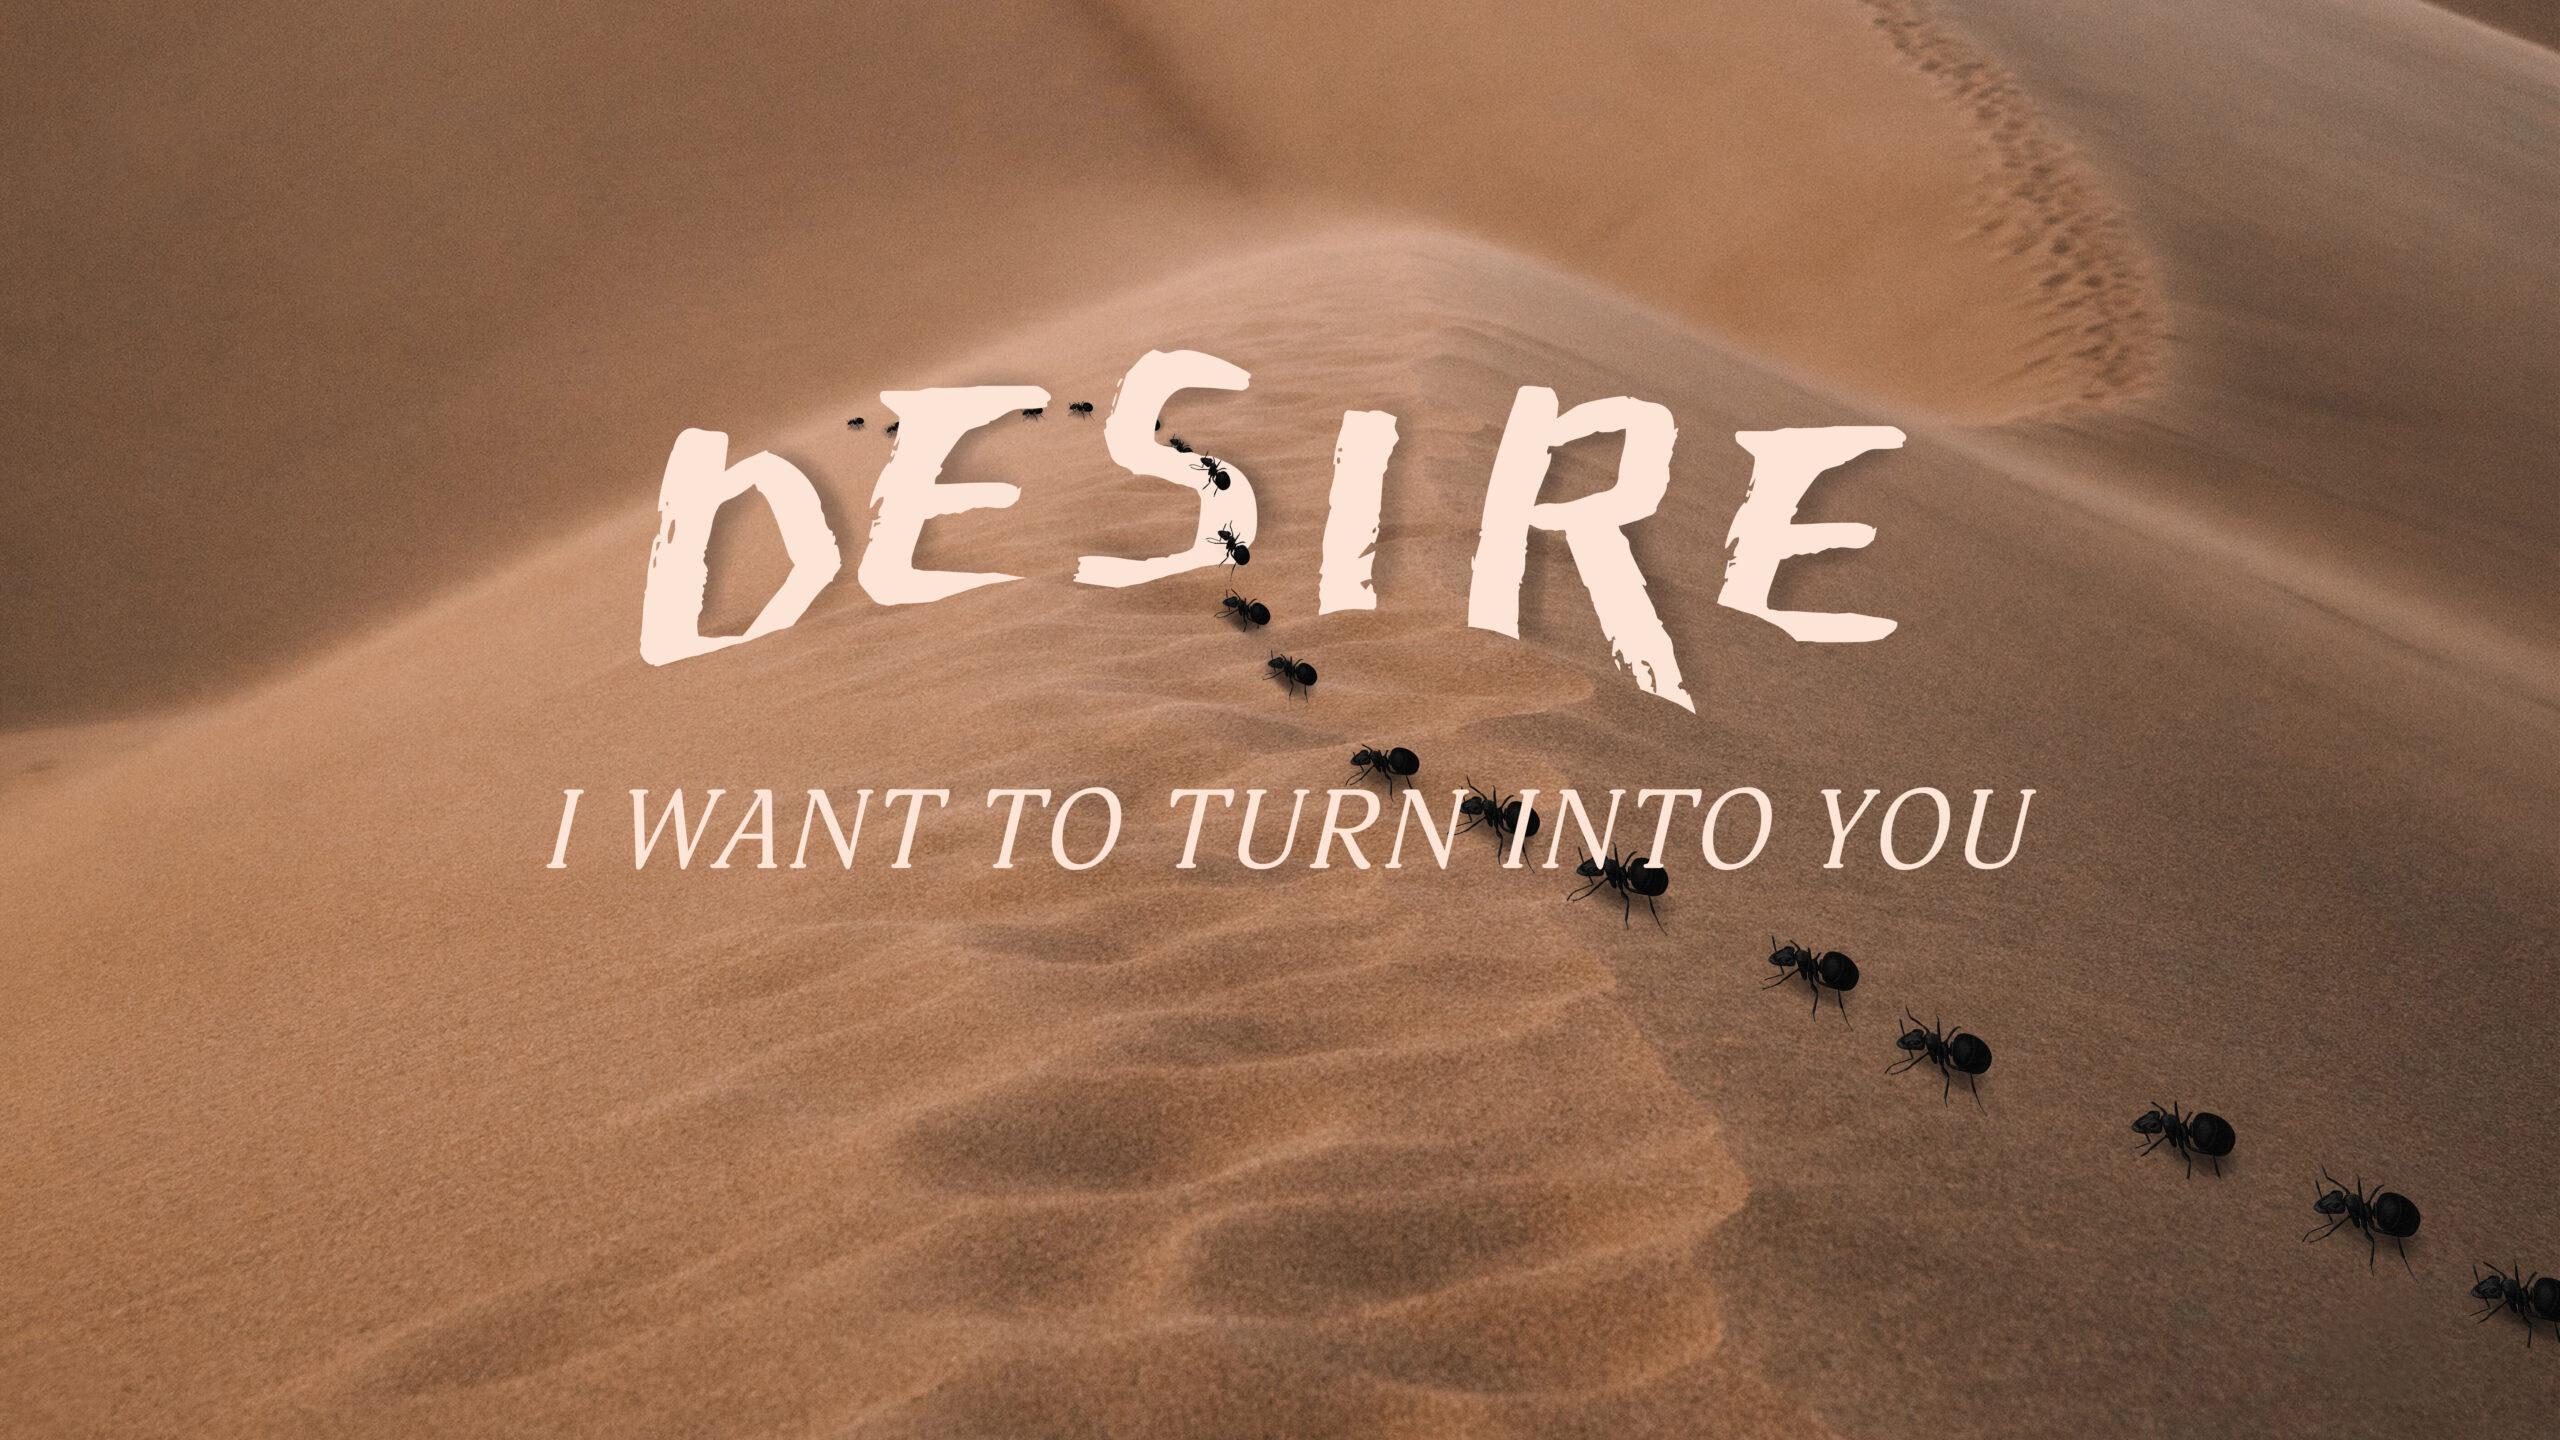 Caroline Polachek on Her New Album, 'Desire